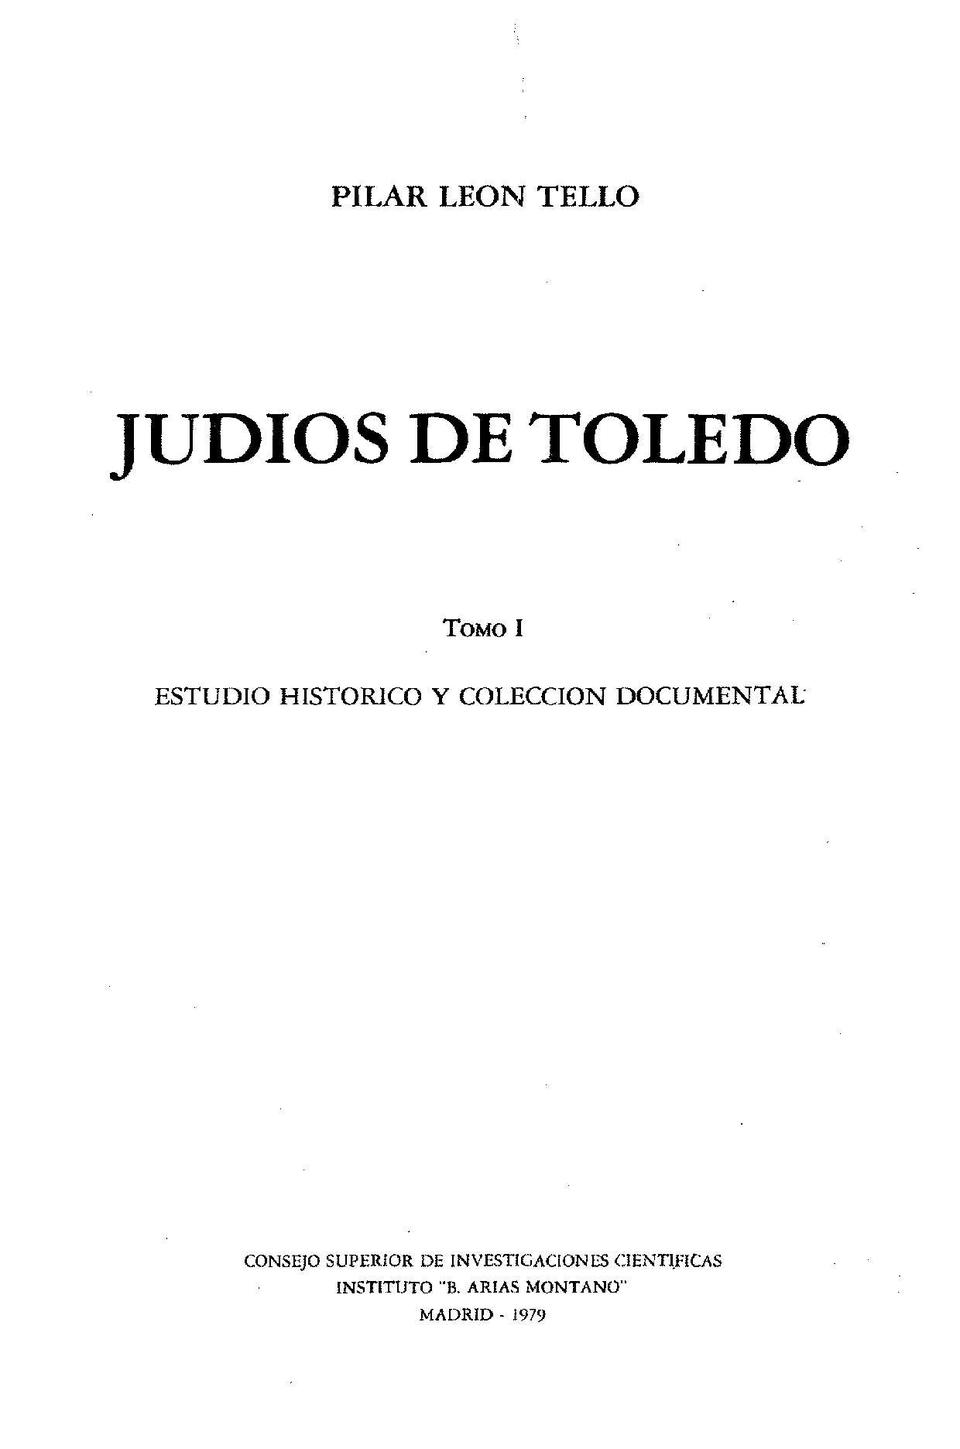 Judíos de Toledo. Tomo I. Estudio histórico y colección documental / Pilar León Tello.-. [Monografía]